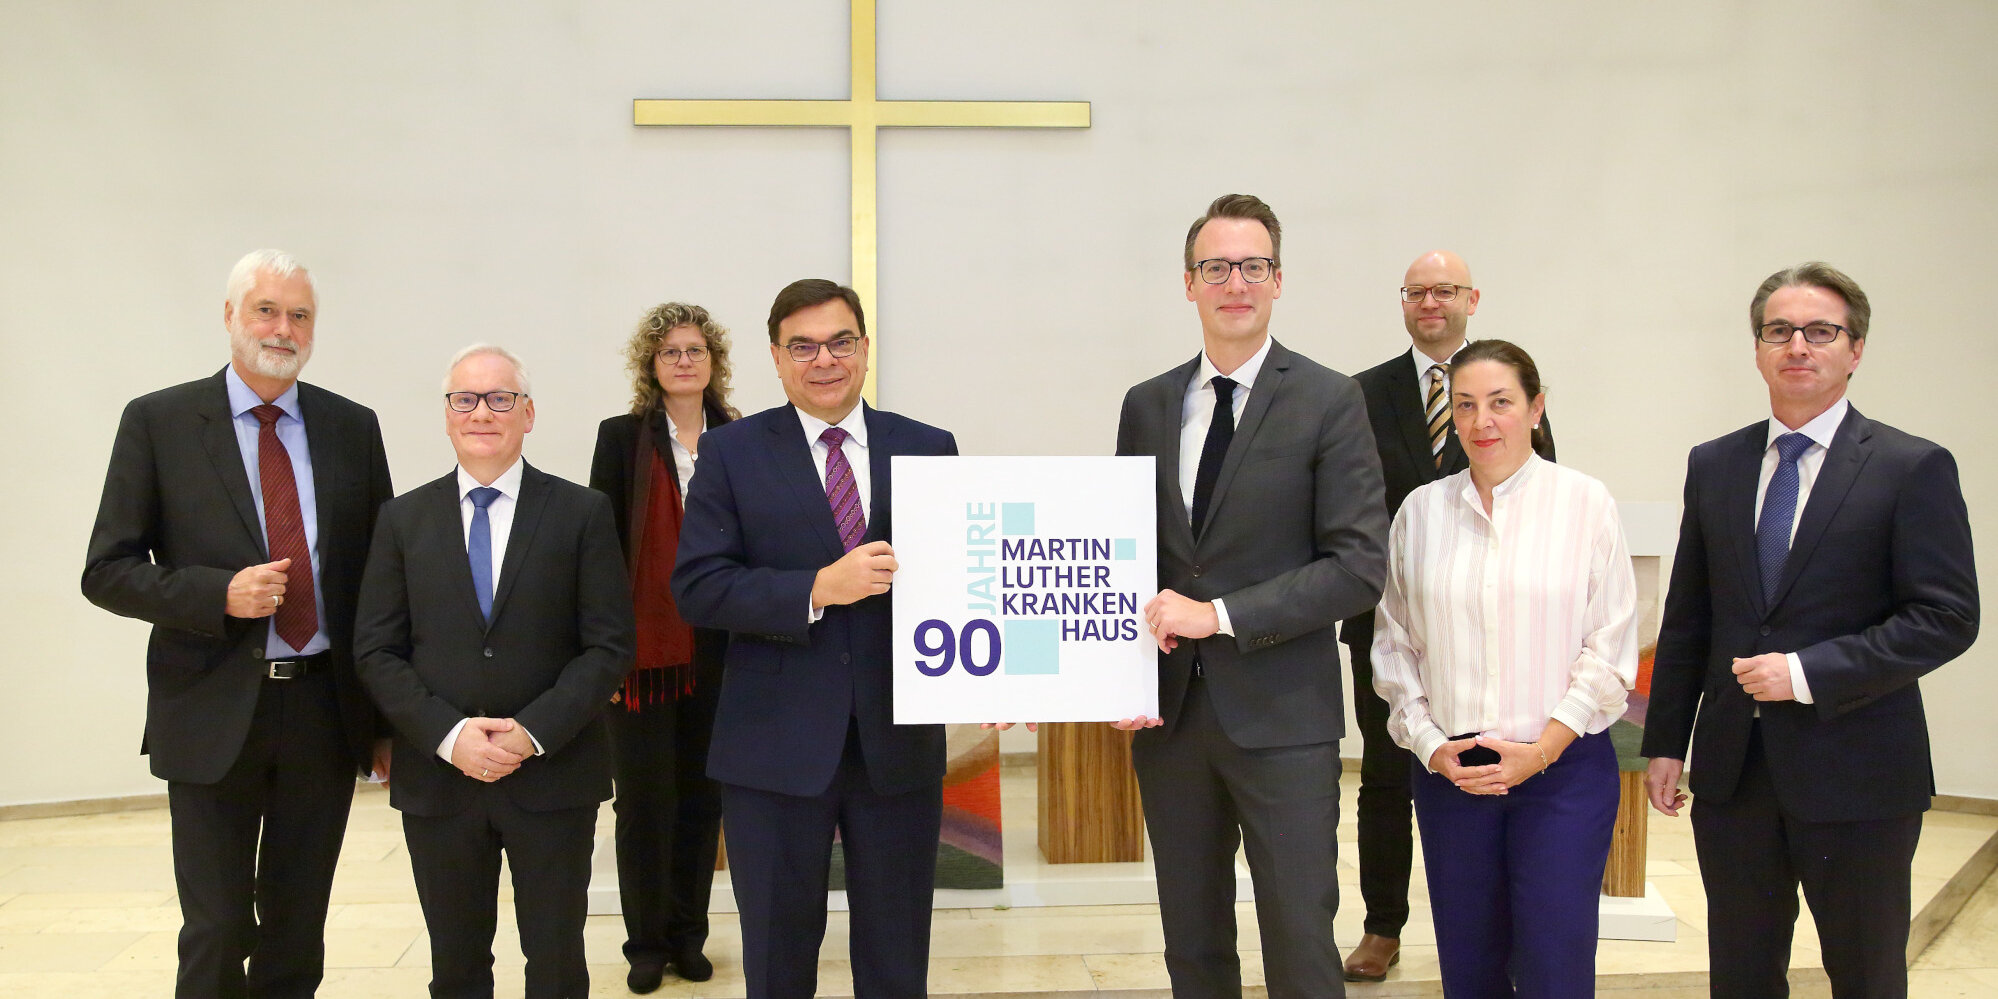 Acht Männer und Frauen stehen in der Kapelle und halten ein Schild mit der Aufschrift "90 Jahre Martin Luther Krankenhaus".